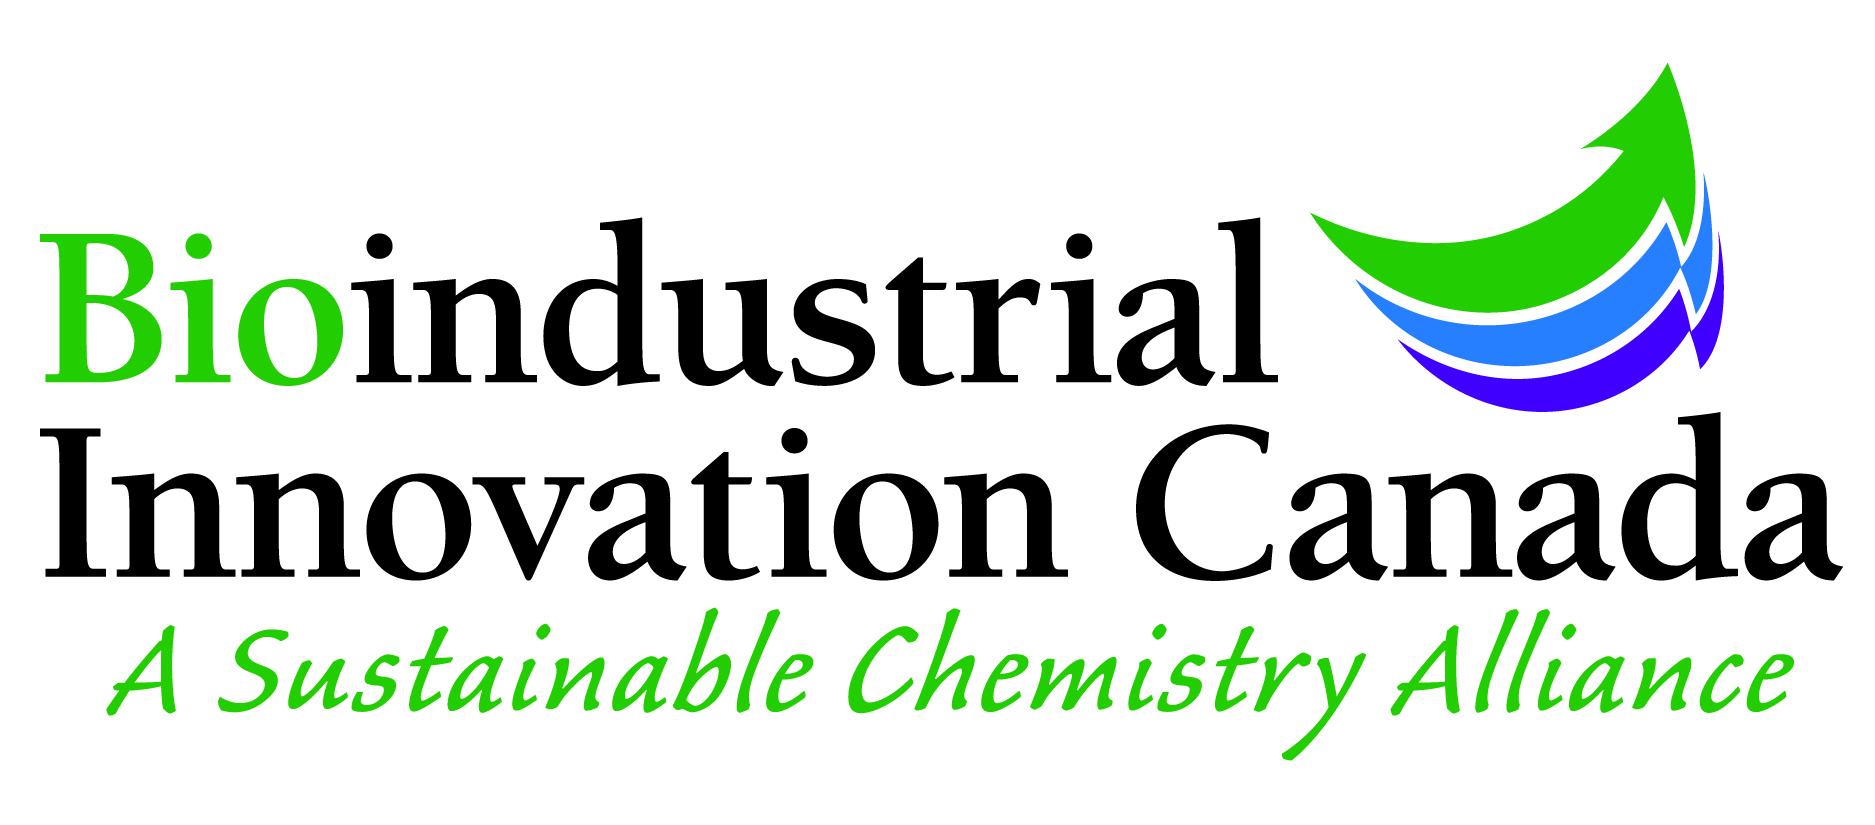 Bioindustrial Innovation Canada